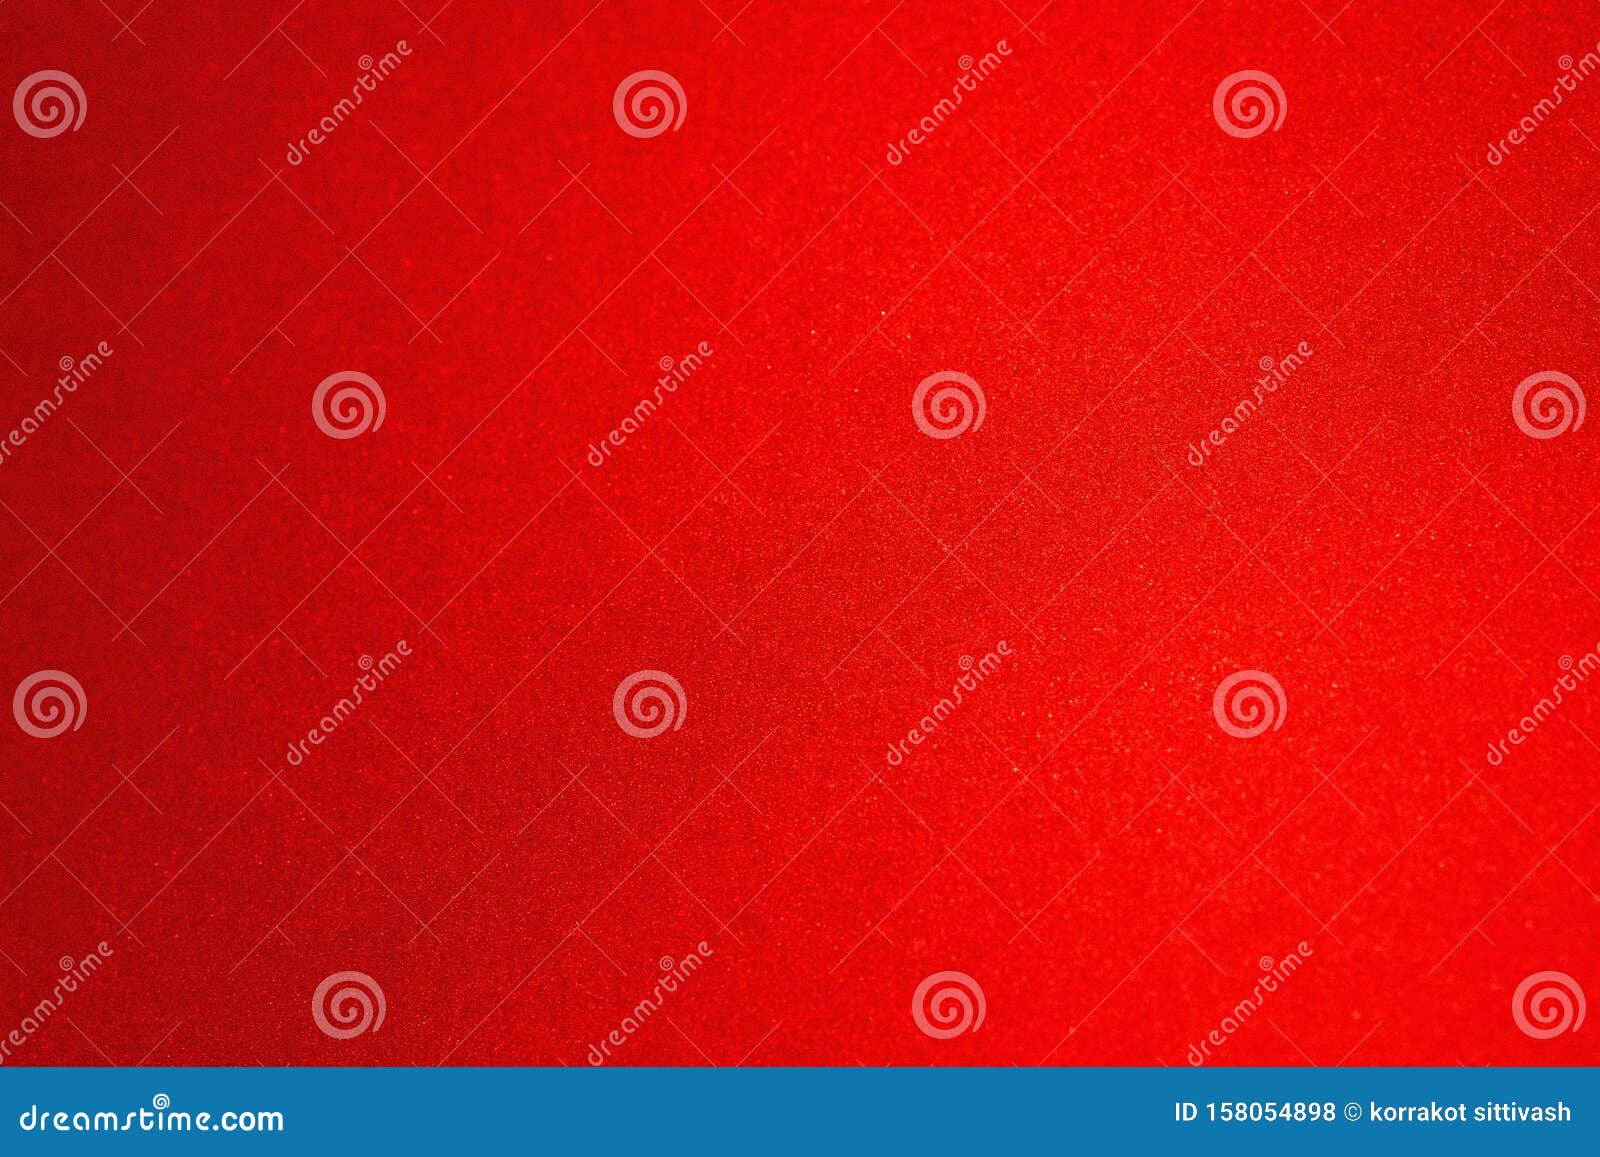 红色金属汽车油漆表面壁纸背景库存照片 图片包括有红色金属汽车油漆表面壁纸背景